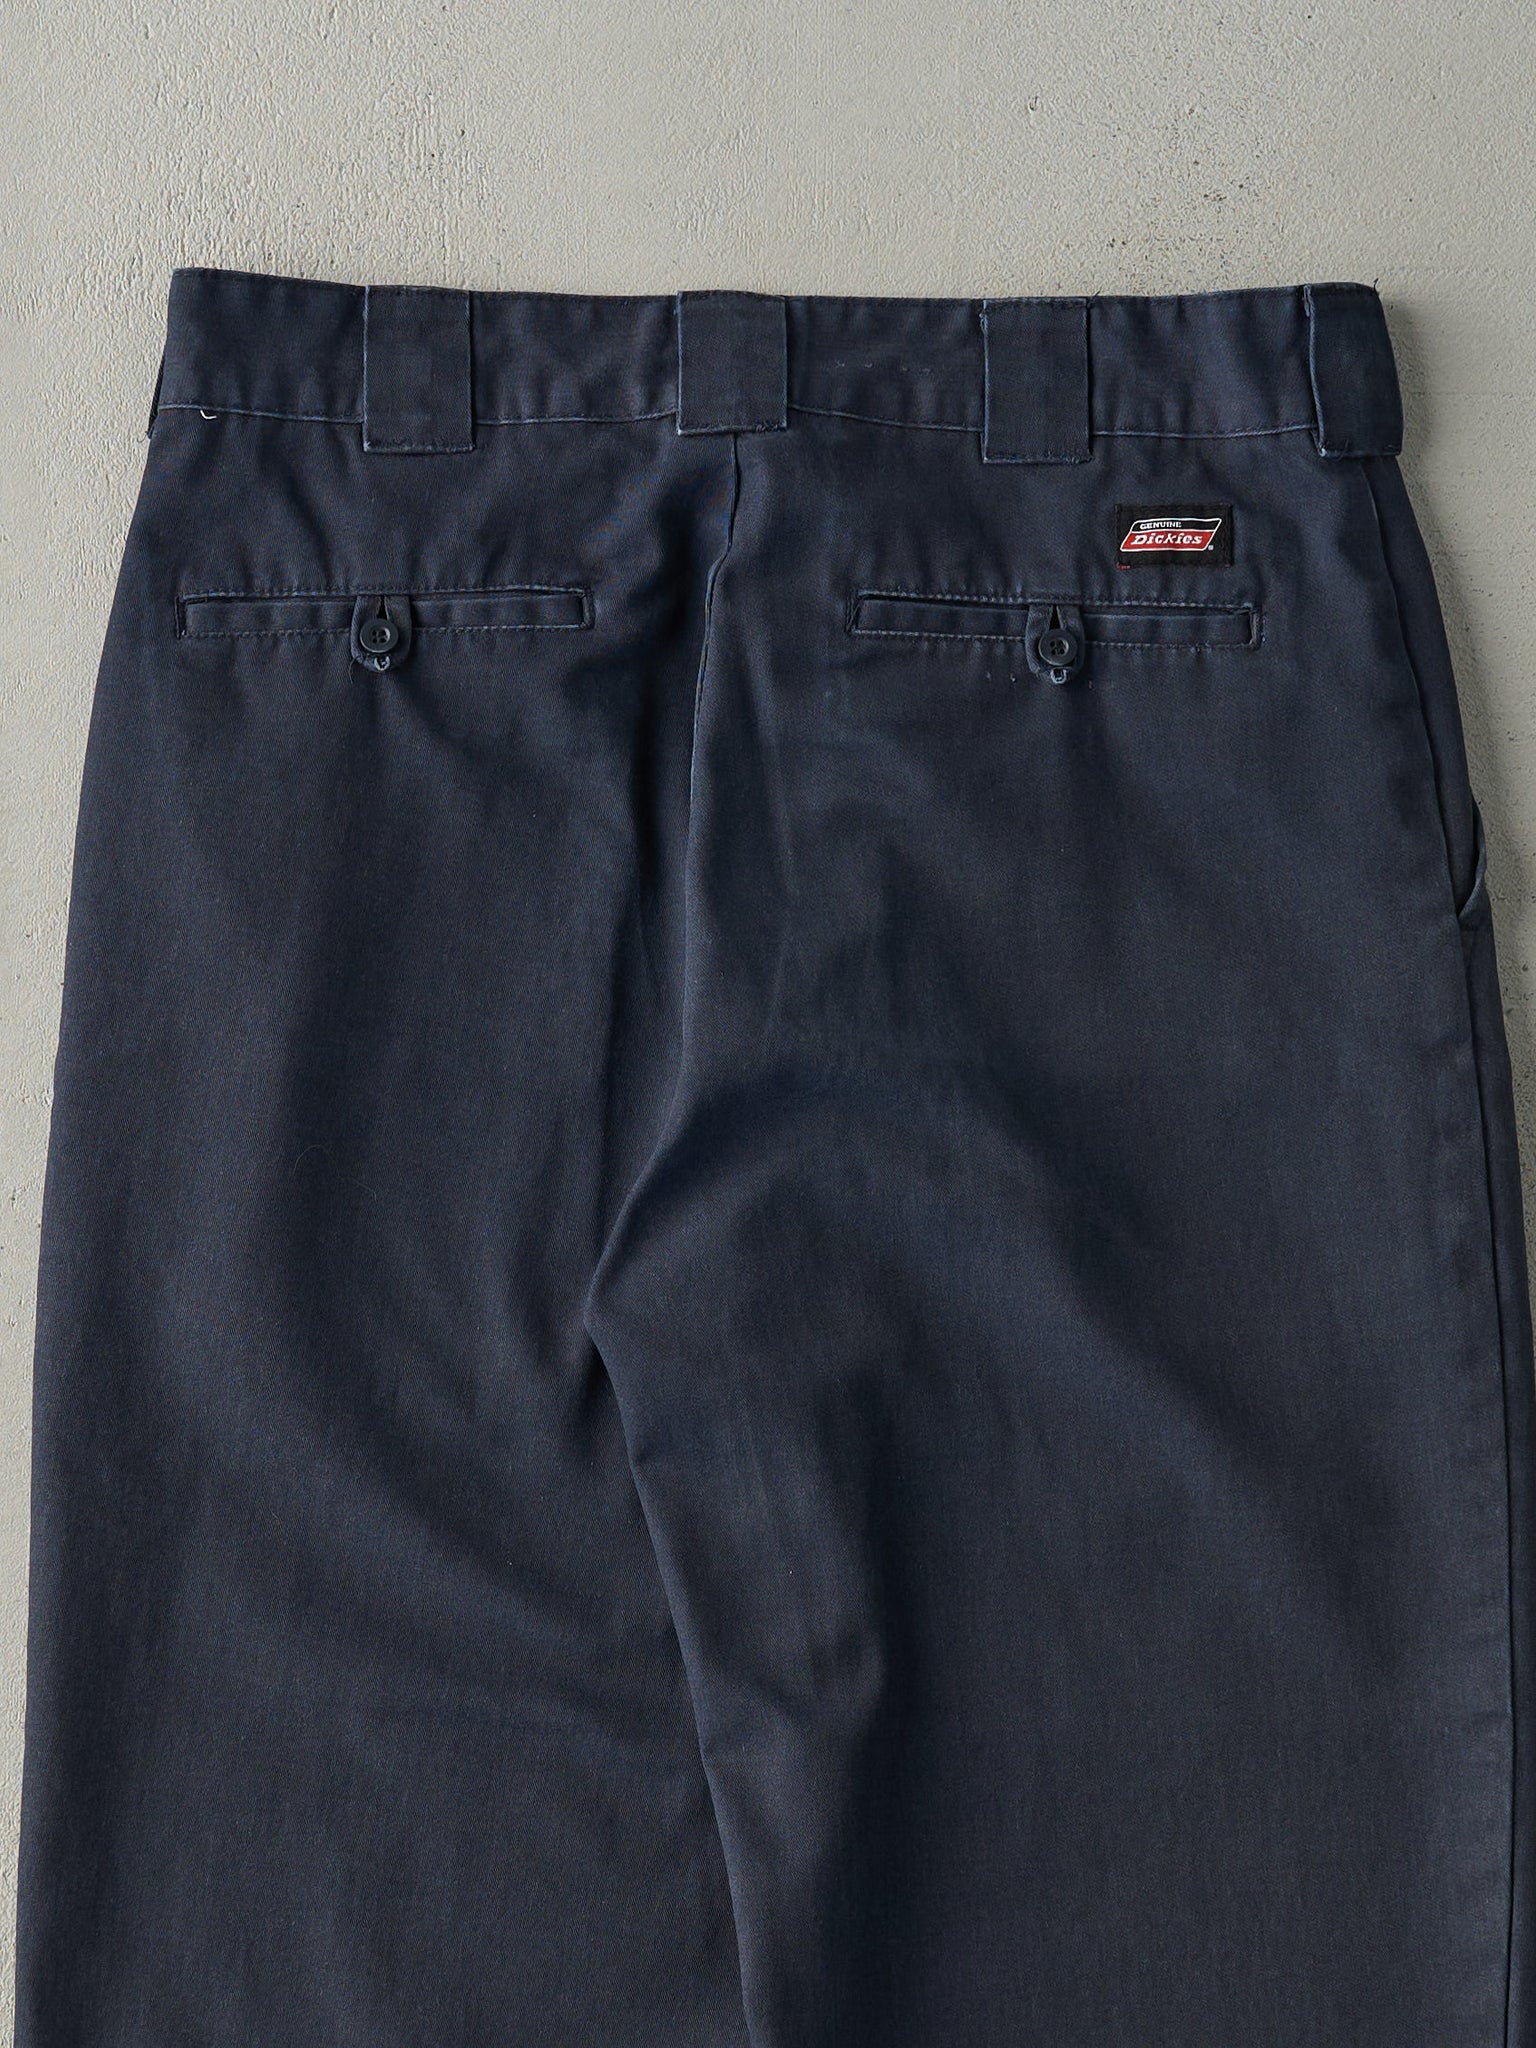 Vintage Y2K Faded Navy Blue Dickies Work Pants (32x26)